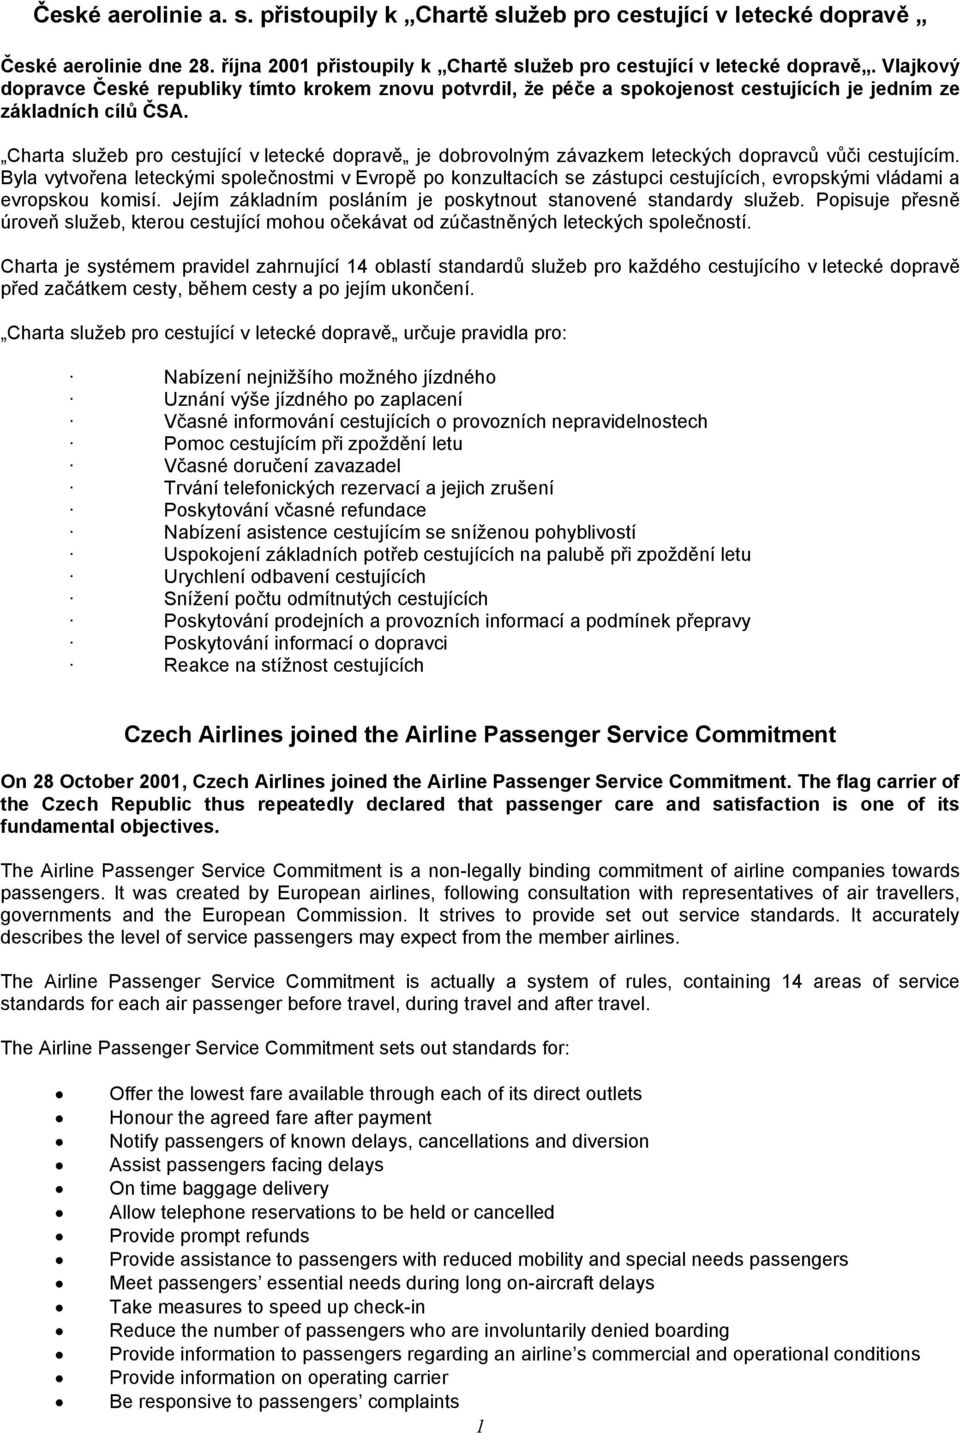 Charta služeb pro cestující v letecké dopravě je dobrovolným závazkem leteckých dopravců vůči cestujícím.